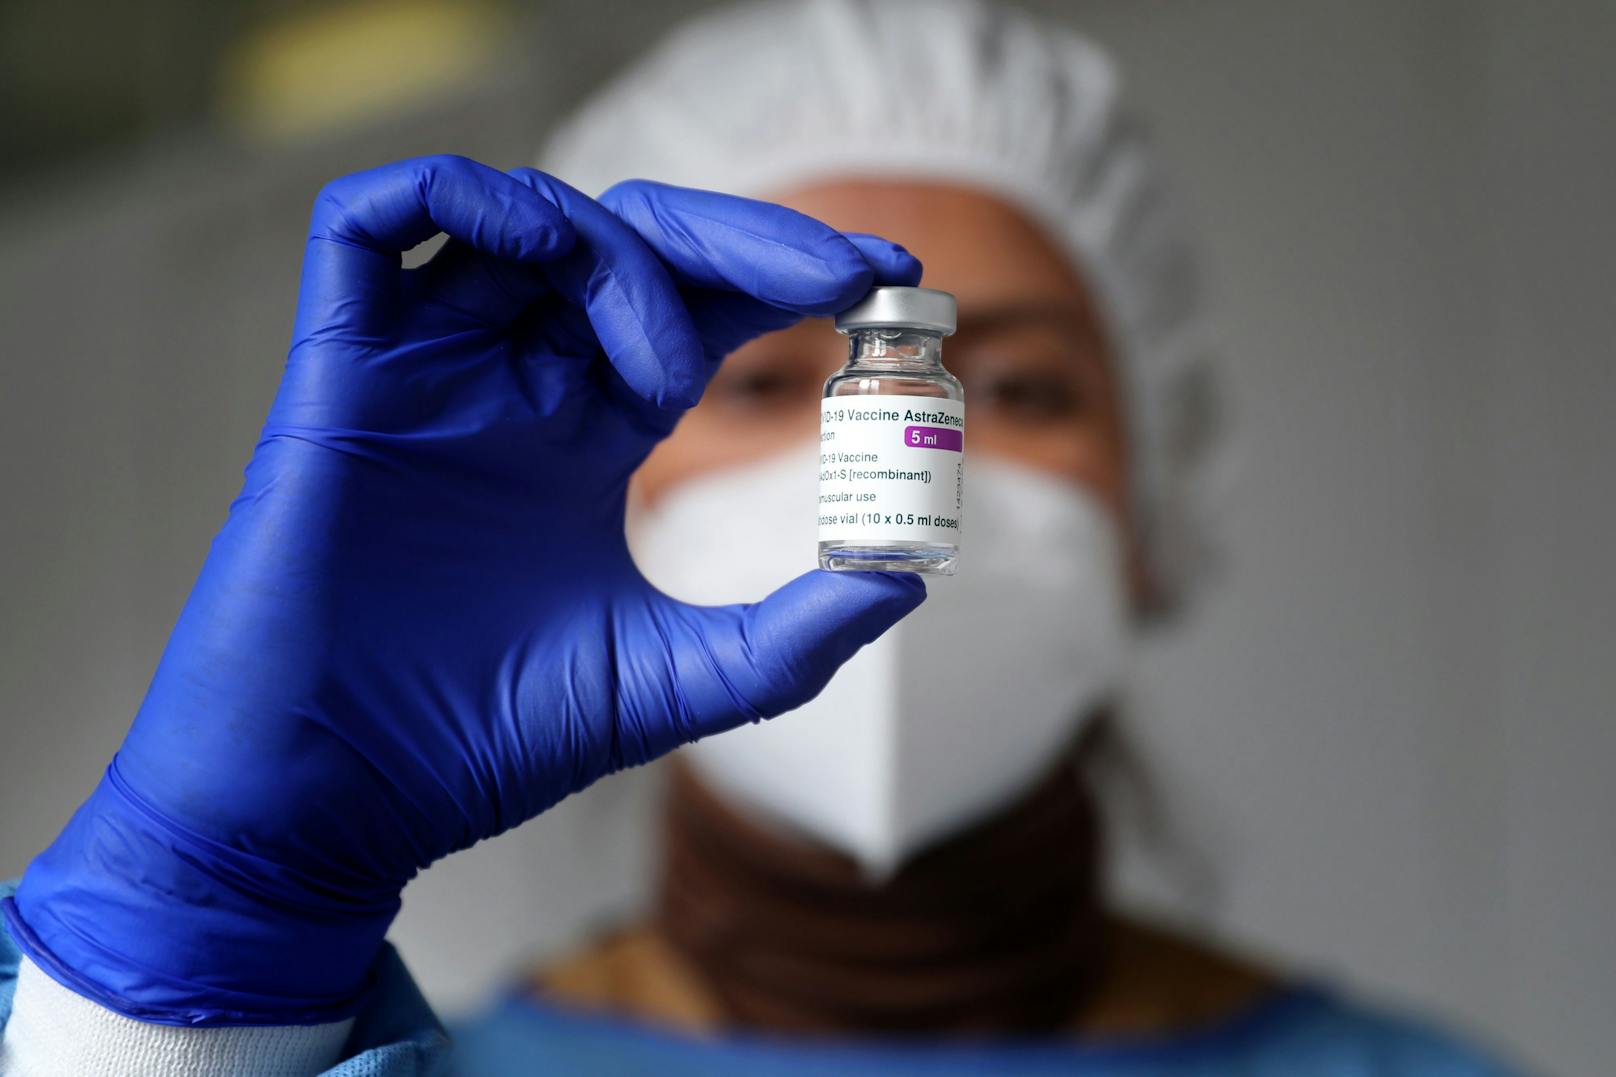 Das Impfgremium könnte jetzt seine Empfehlung zum AstraZeneca-Impfstoff abändern.